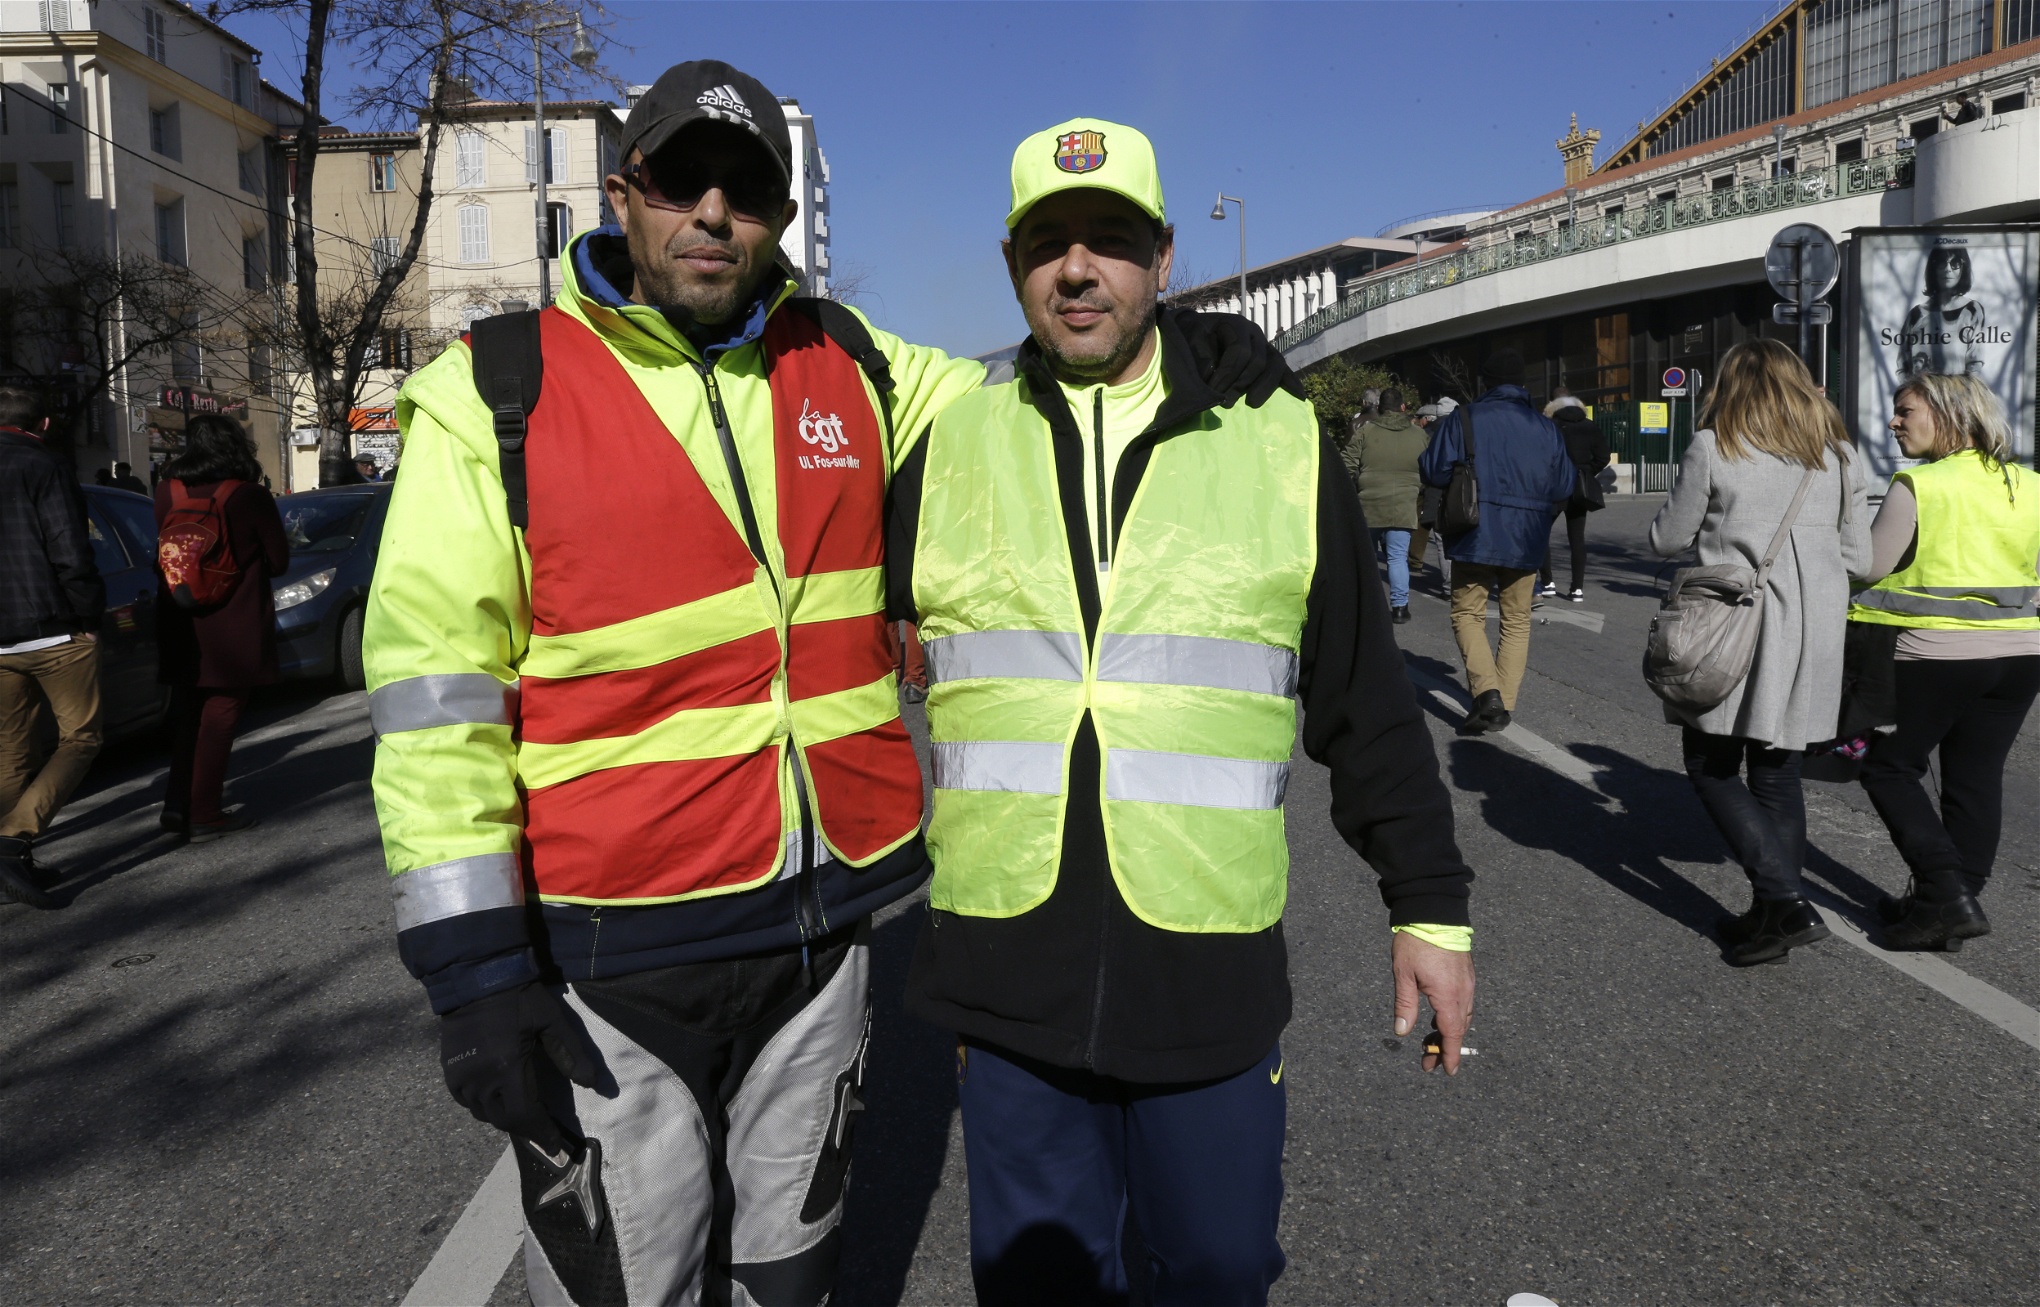 Mourad från CGT och Daniel från Gula västarna poserar tillsammans under en demonstration i Marseille i samband med den franska strejken tisdagen den 5 februari.